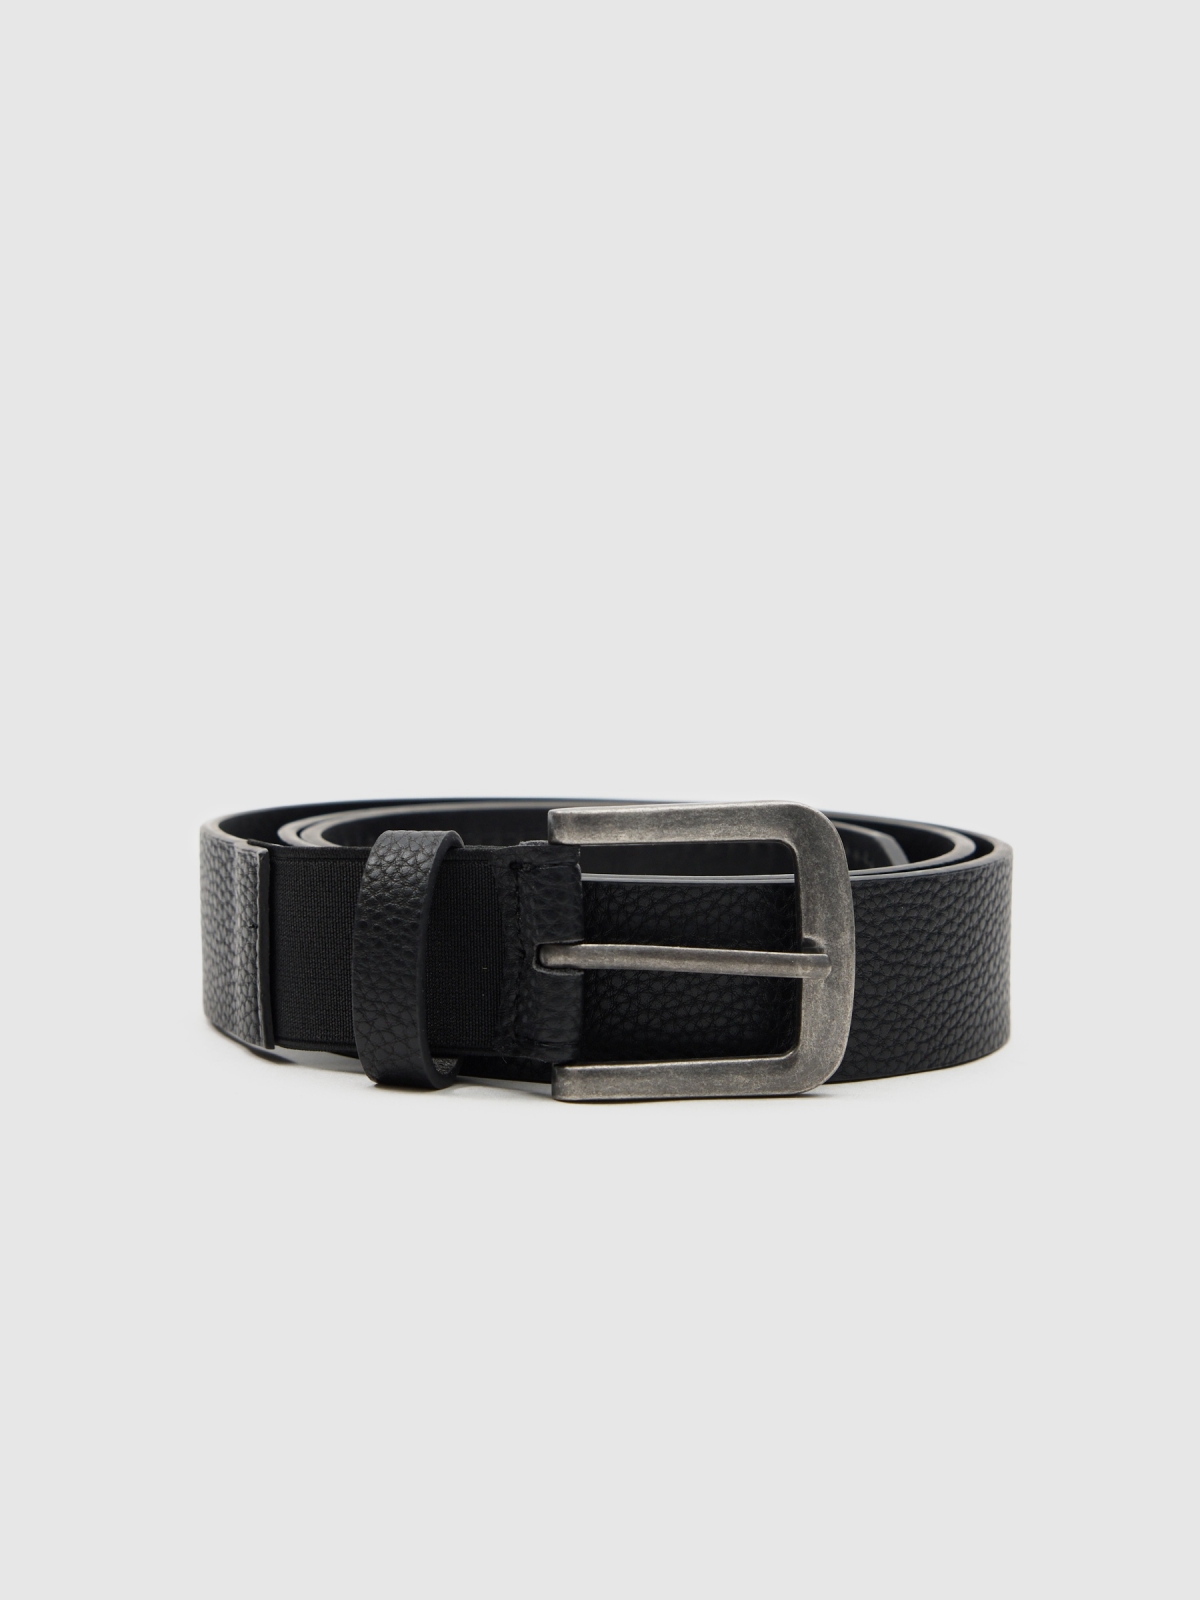 Textured leatherette belt black